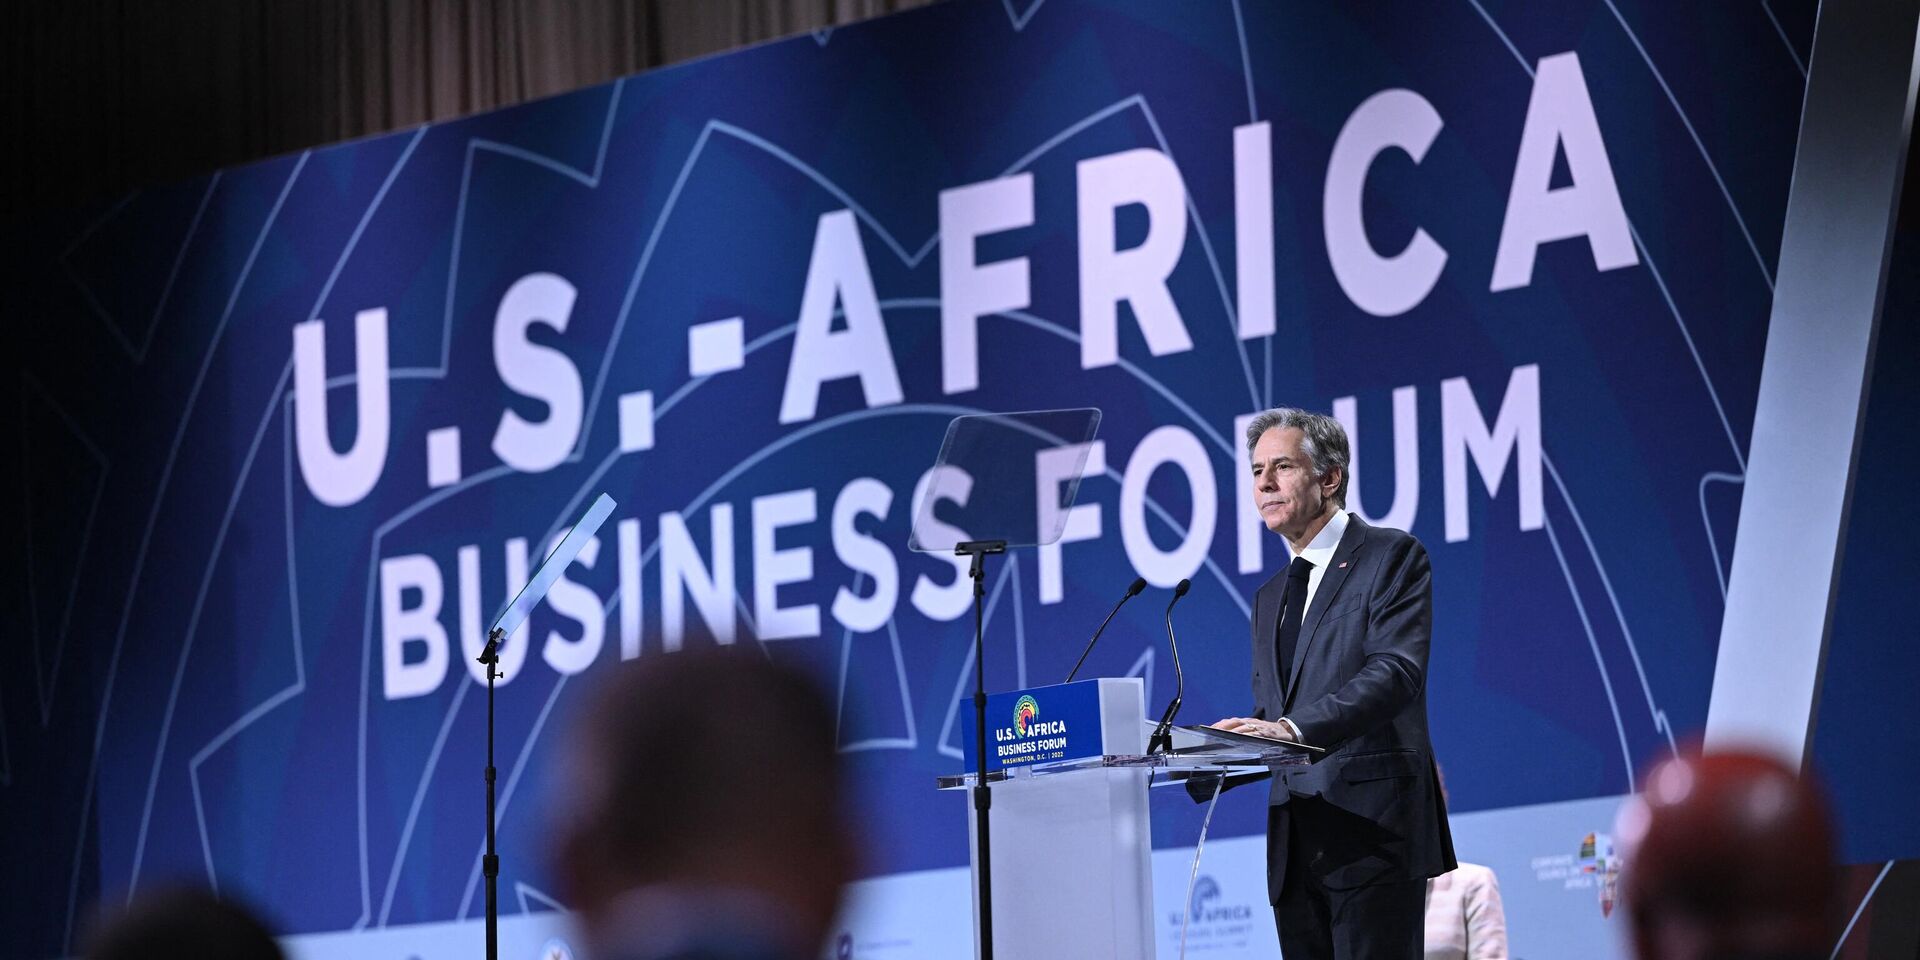 Государственный секретарь США Энтони Блинкен выступает на саммите лидеров США и Африки в Вашингтоне. 14 декабря 2022 года - ИноСМИ, 1920, 14.12.2022